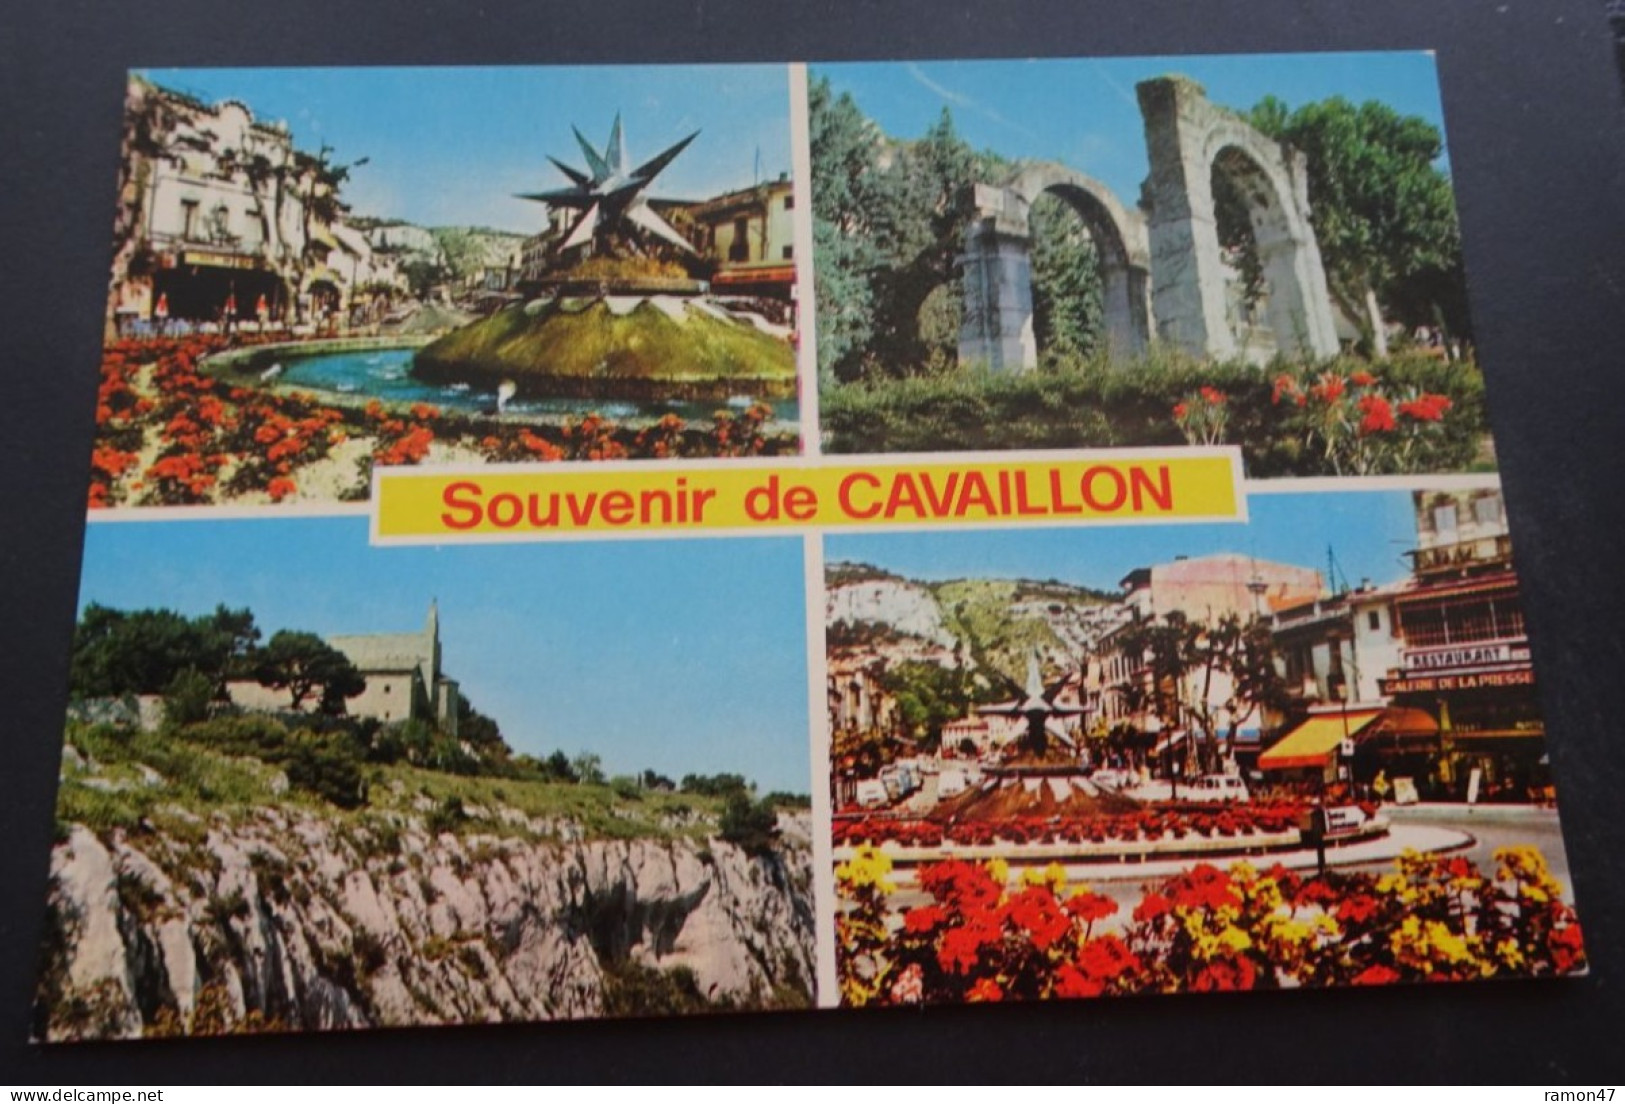 Souvenir De Cavaillon - Editions S.E.P.T., Nice - Cavaillon